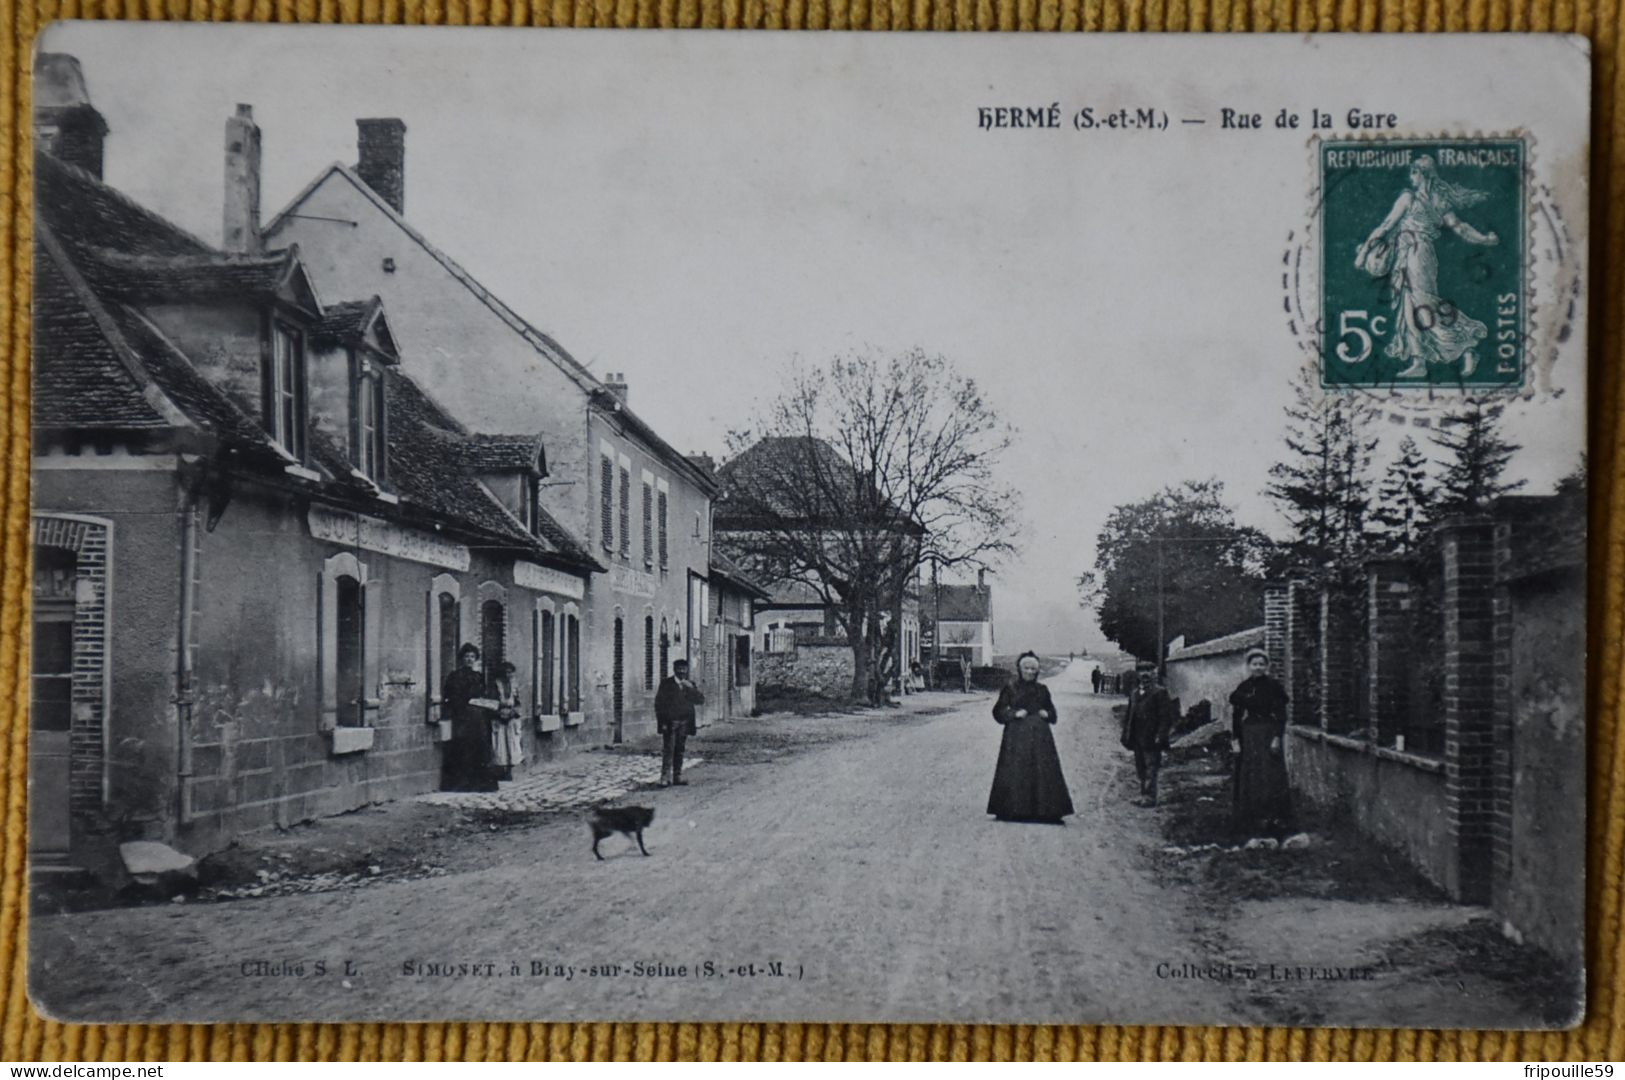 Hermé - Rue De La Gare - Cliché S.L. - Simonet à Bray-sur-Seine - Coll. Lefebvre - Circulé En 1909 - Provins